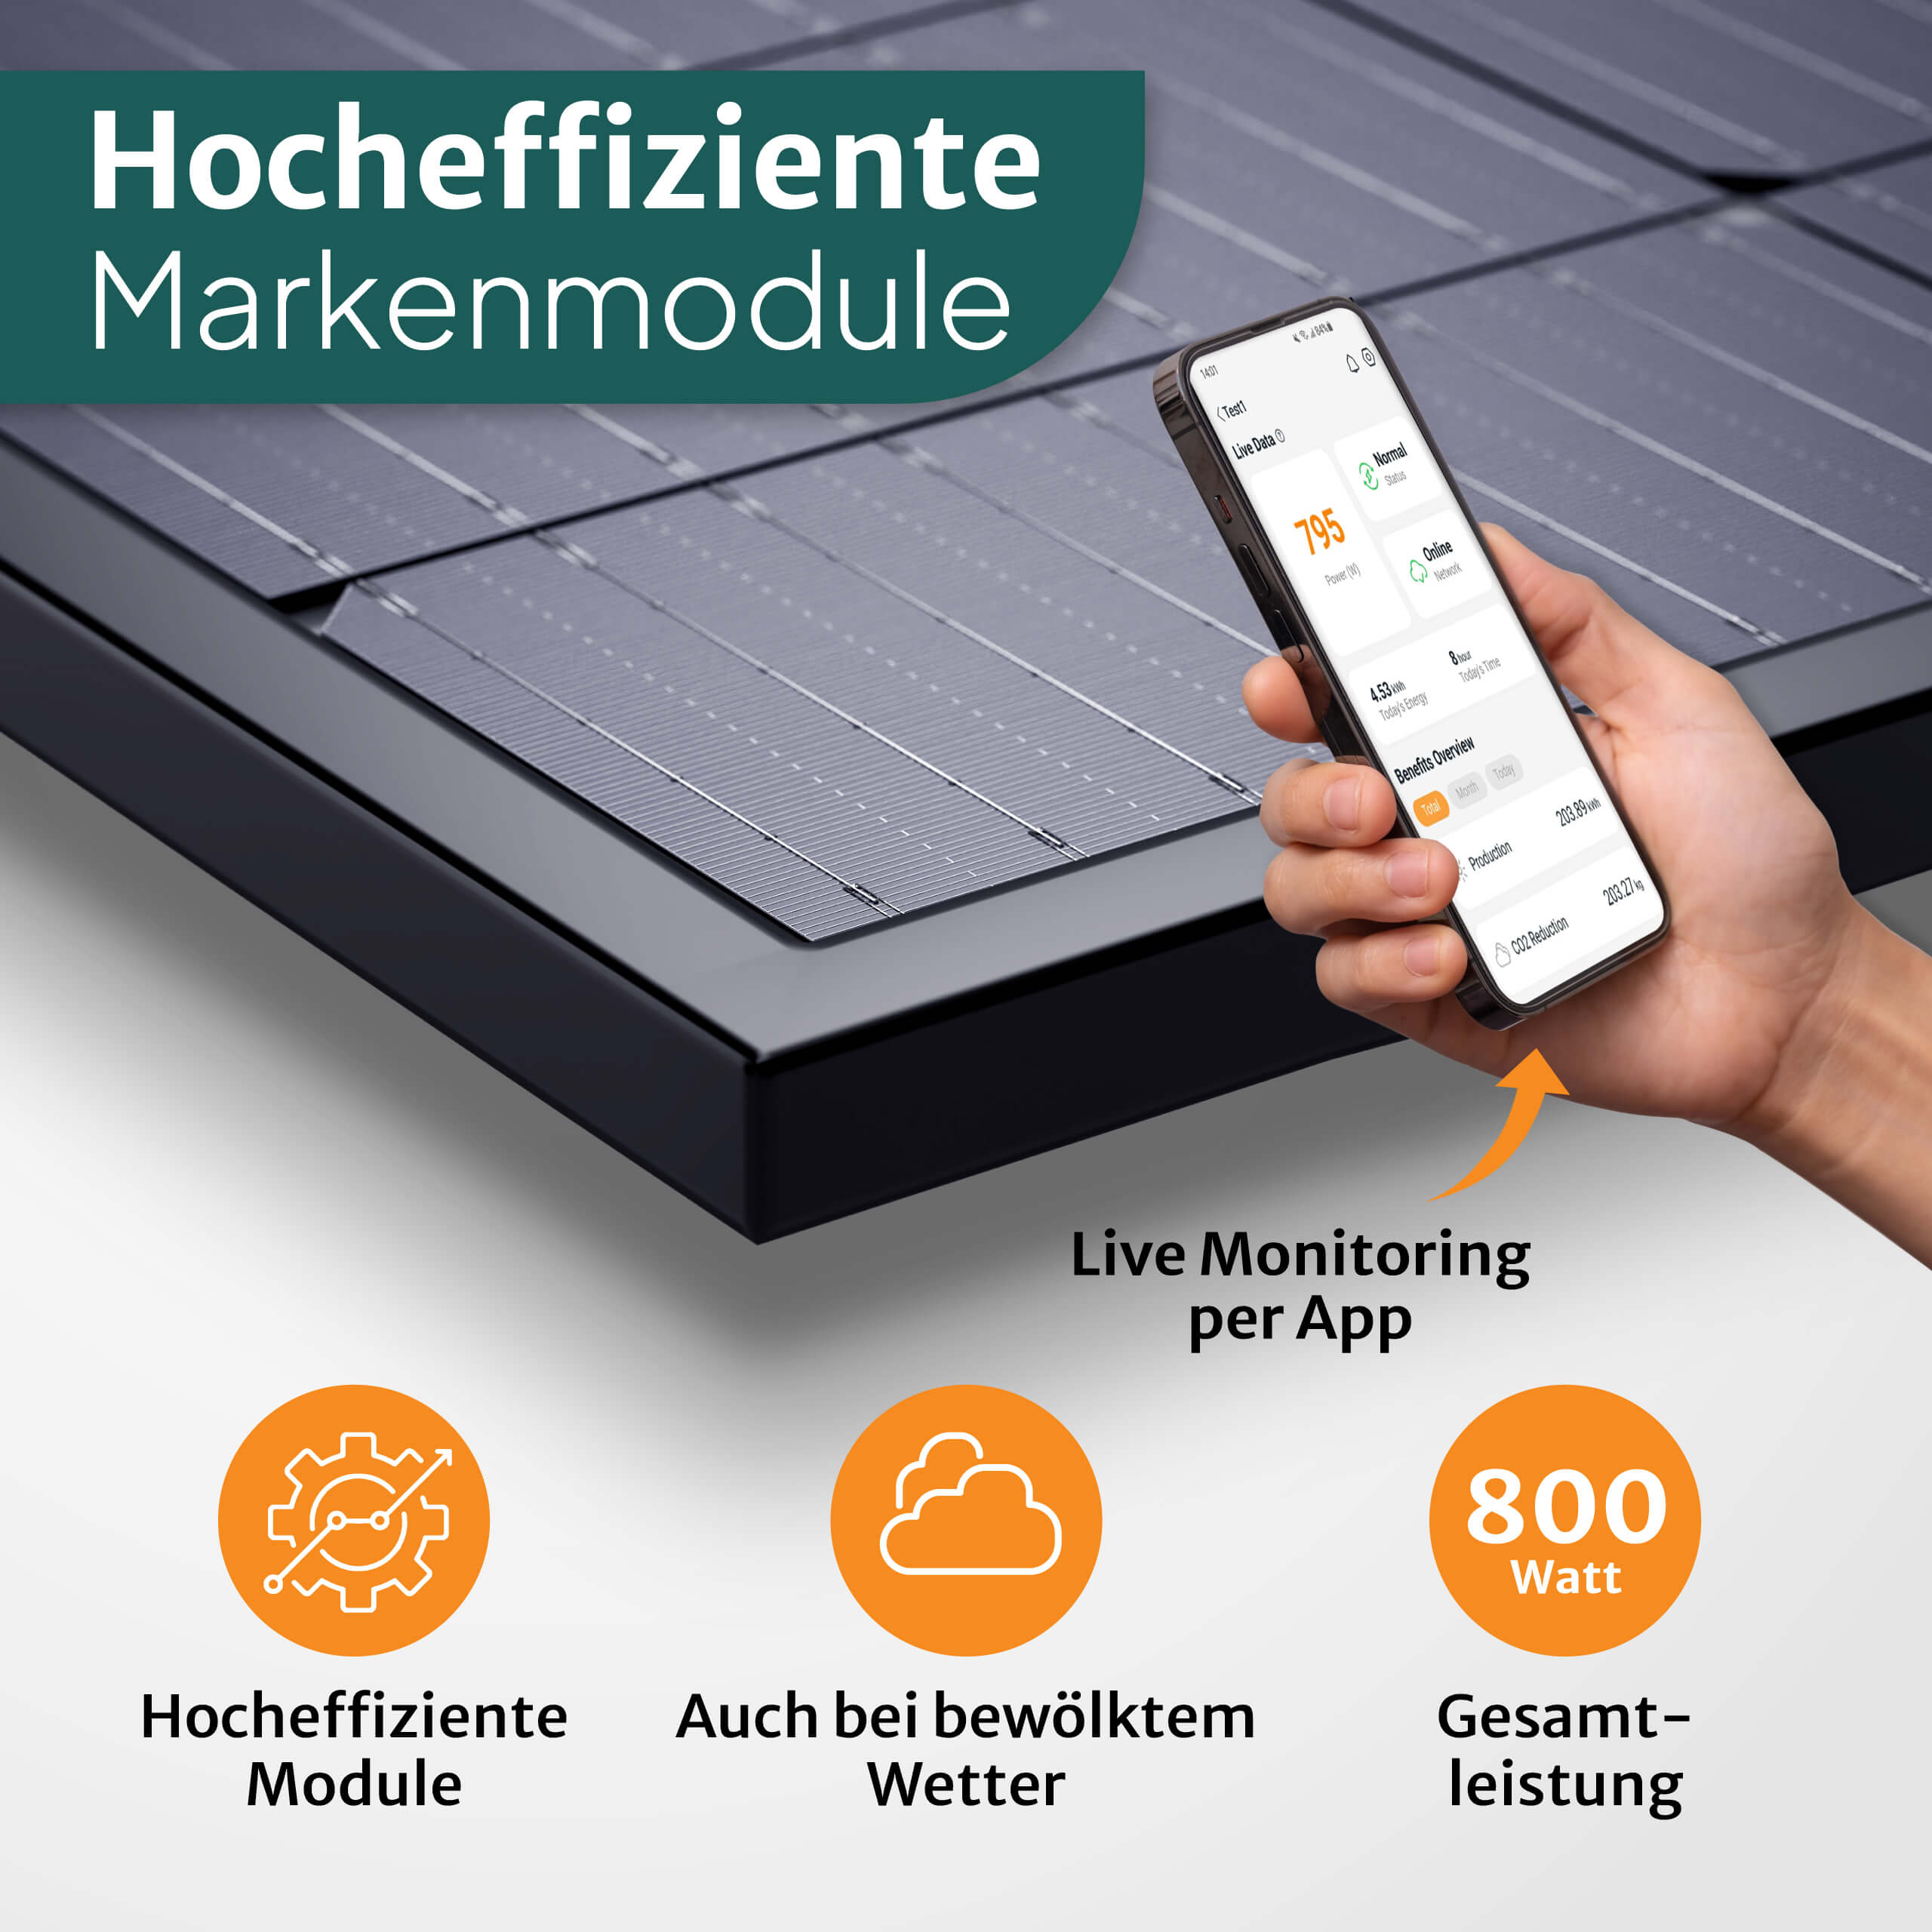 Speicher 850W Balkon-Solaranlage Flachdach-Halterung 1kWh - Batterie Kabel STROMGANZEINFACH 15m inkl. mit